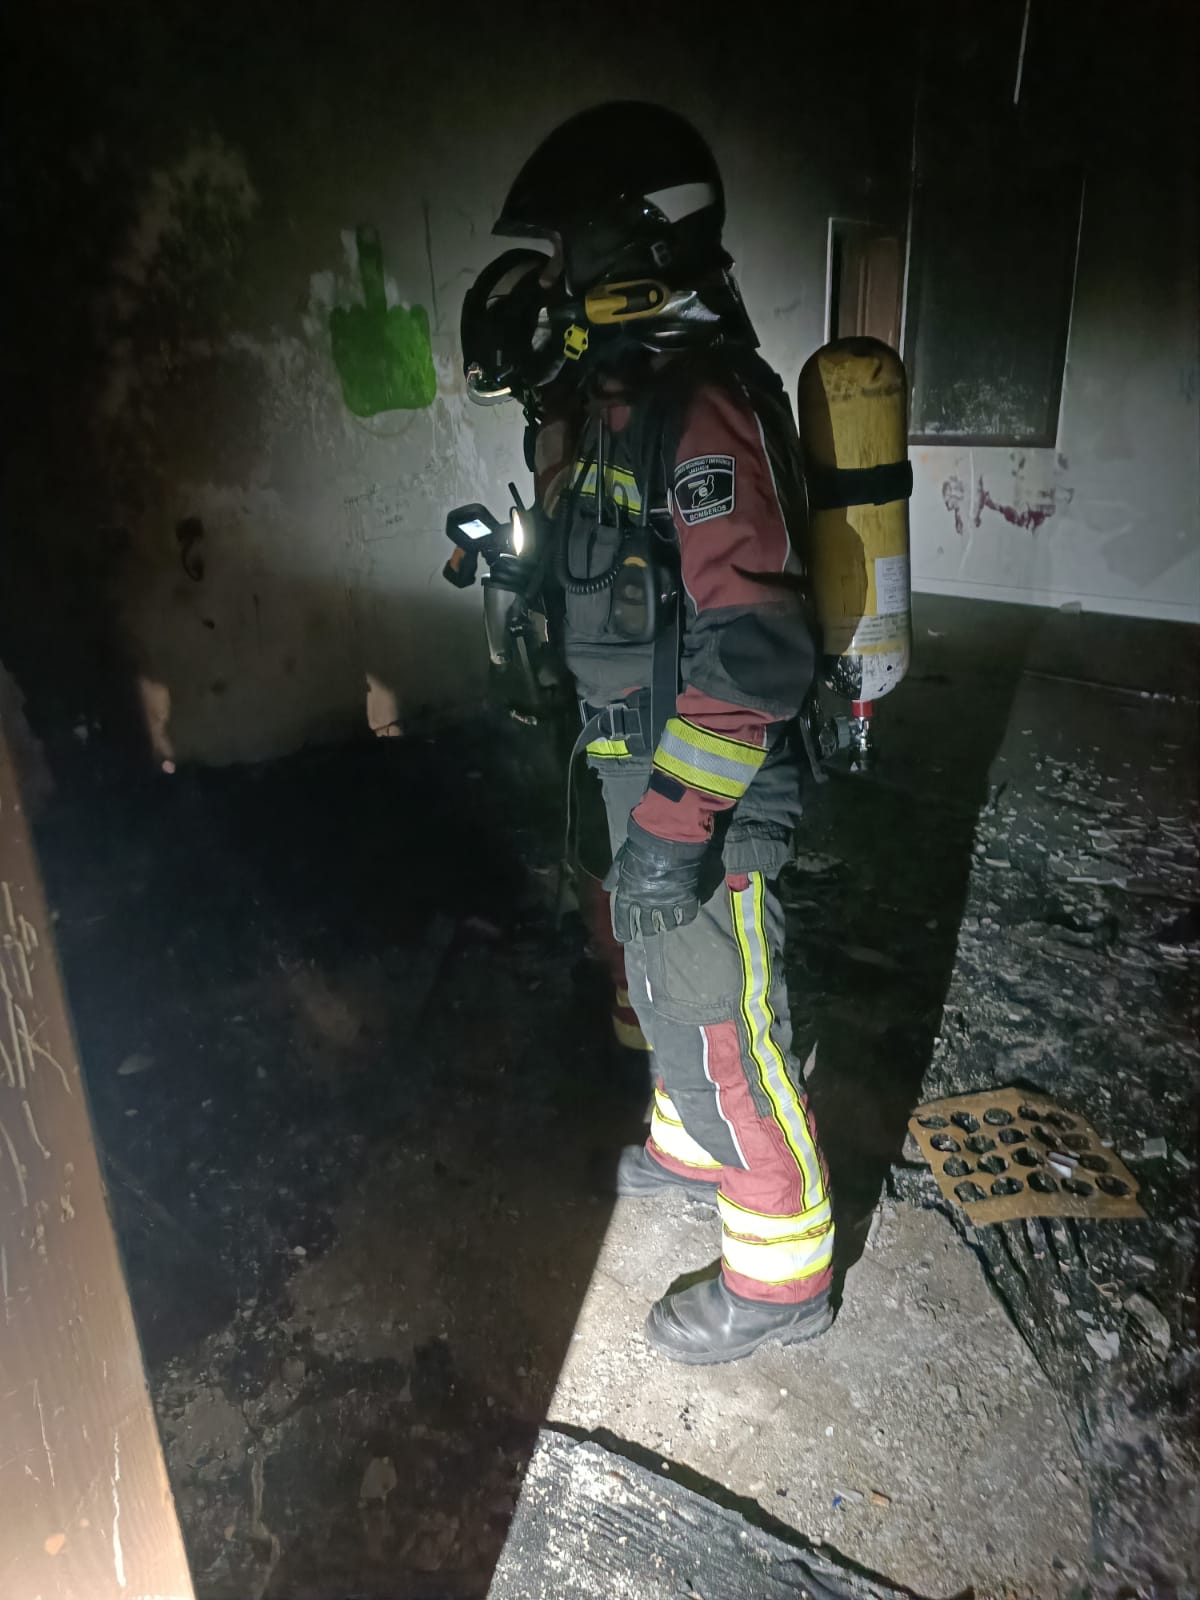 Uno de los bomberos revisando la habitación afectada por el incendio en el albergue de La Santa. Foto: Consorcio de Seguridad.